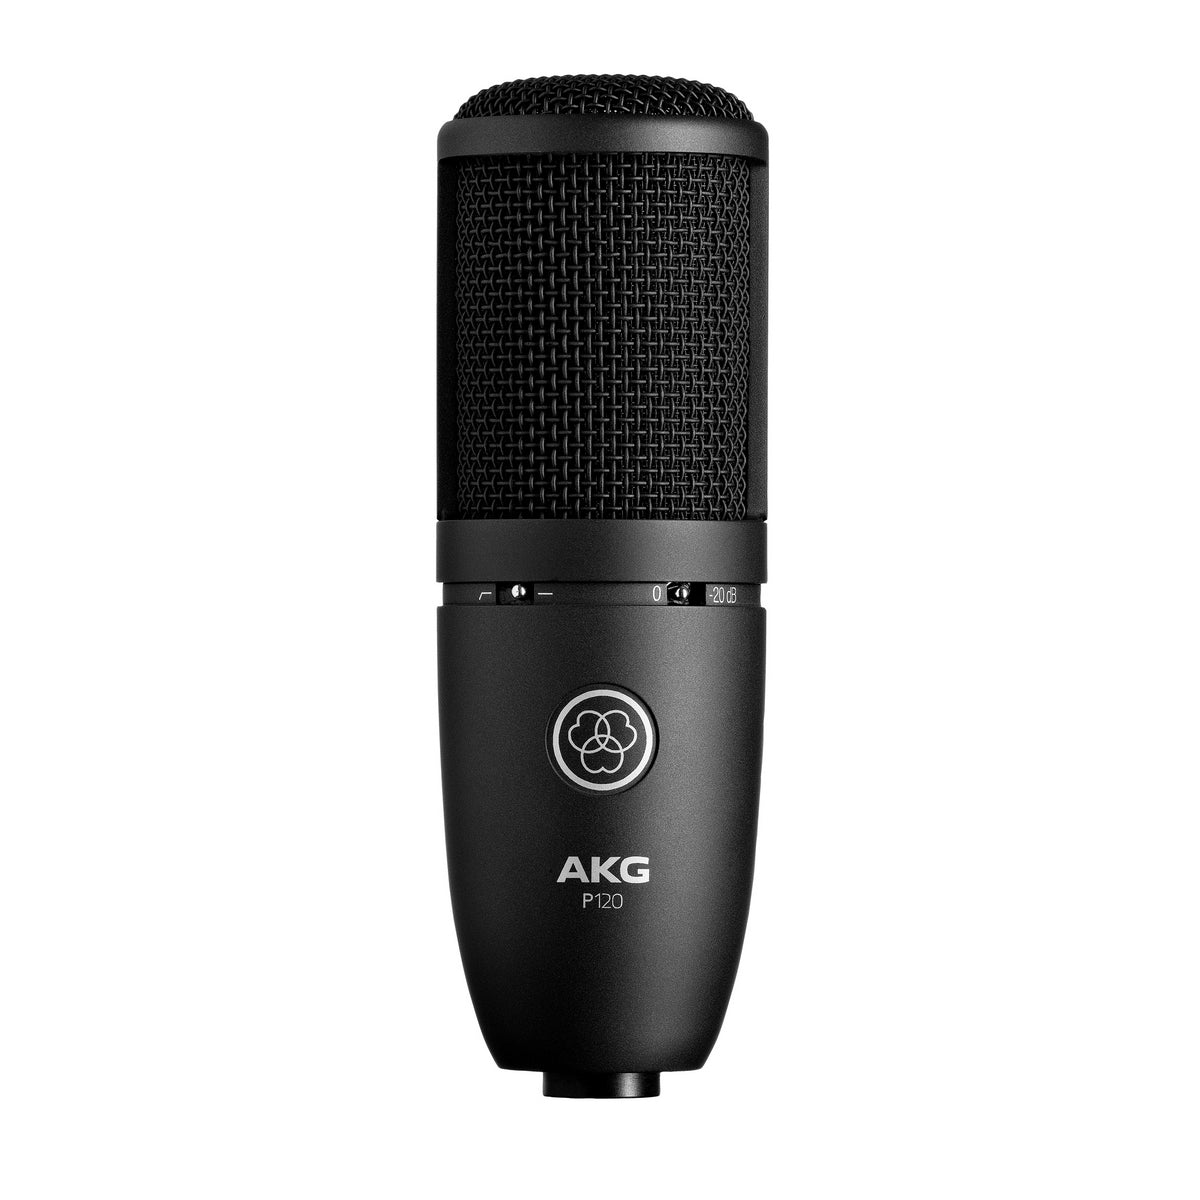 AKG P120 | General Purpose Recording Microphone